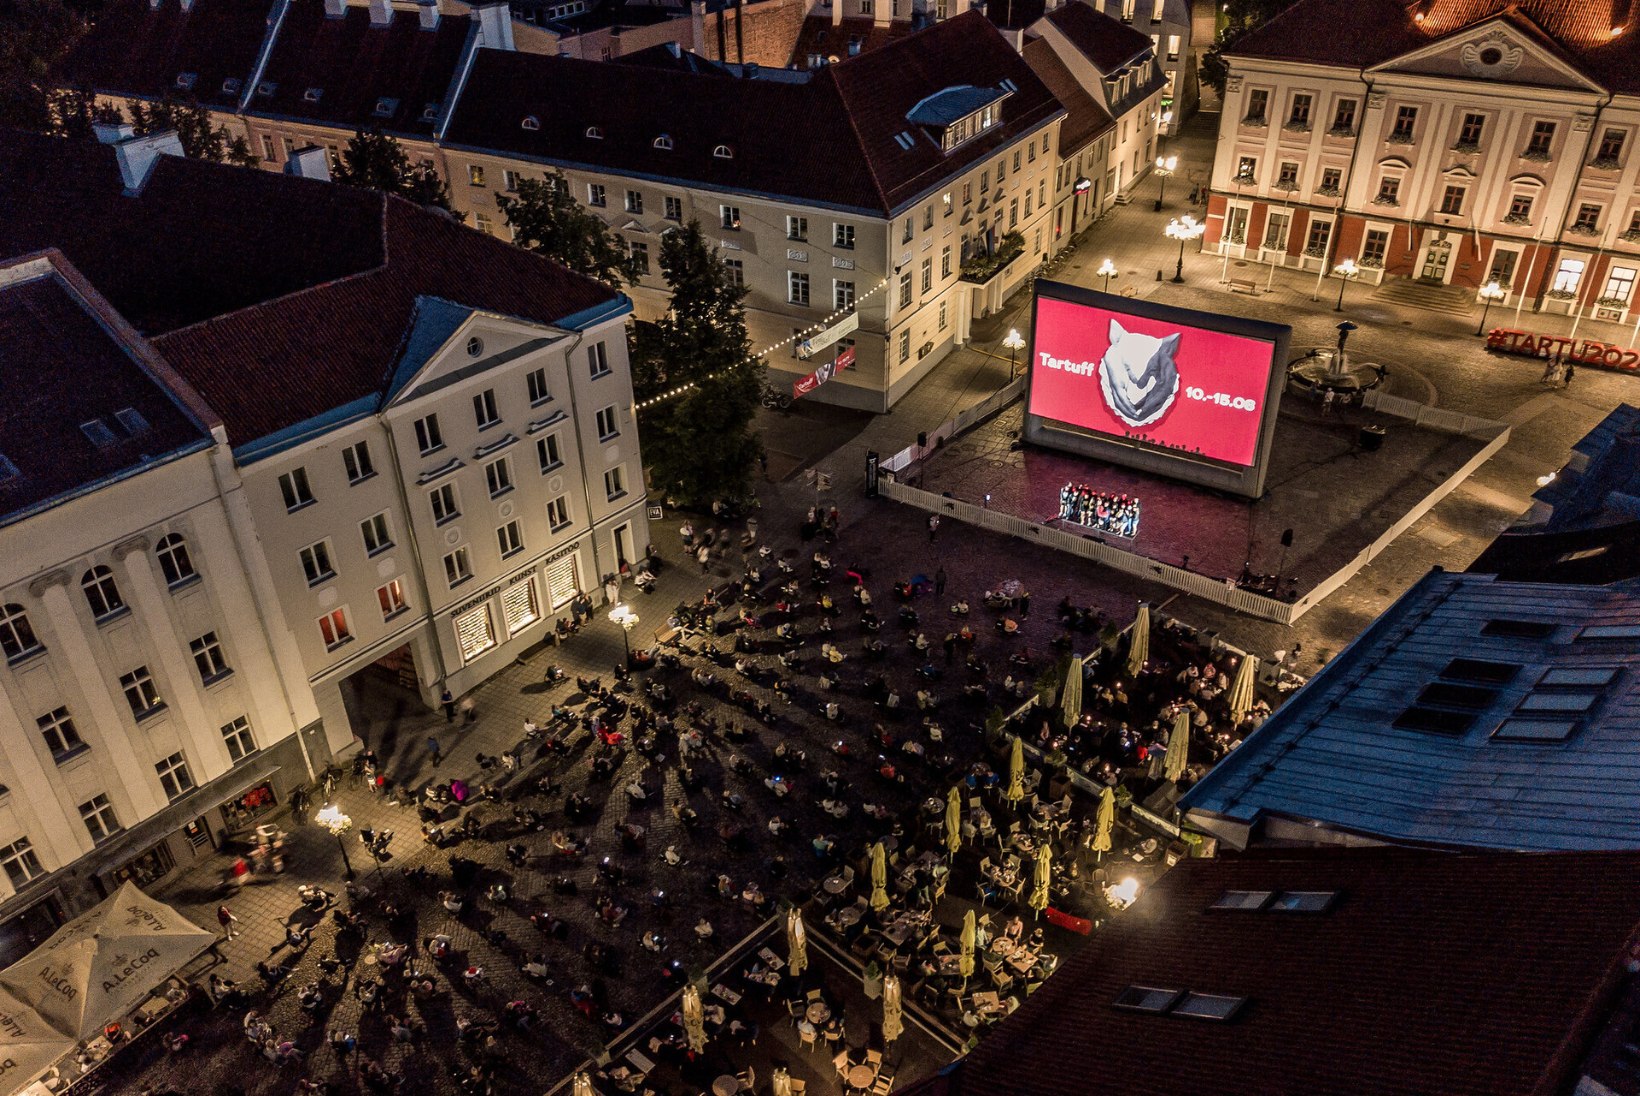 Juba täna! Armastusfilmide festival muudab Tartu linnasüdame Eesti suurimaks vabaõhukinoks